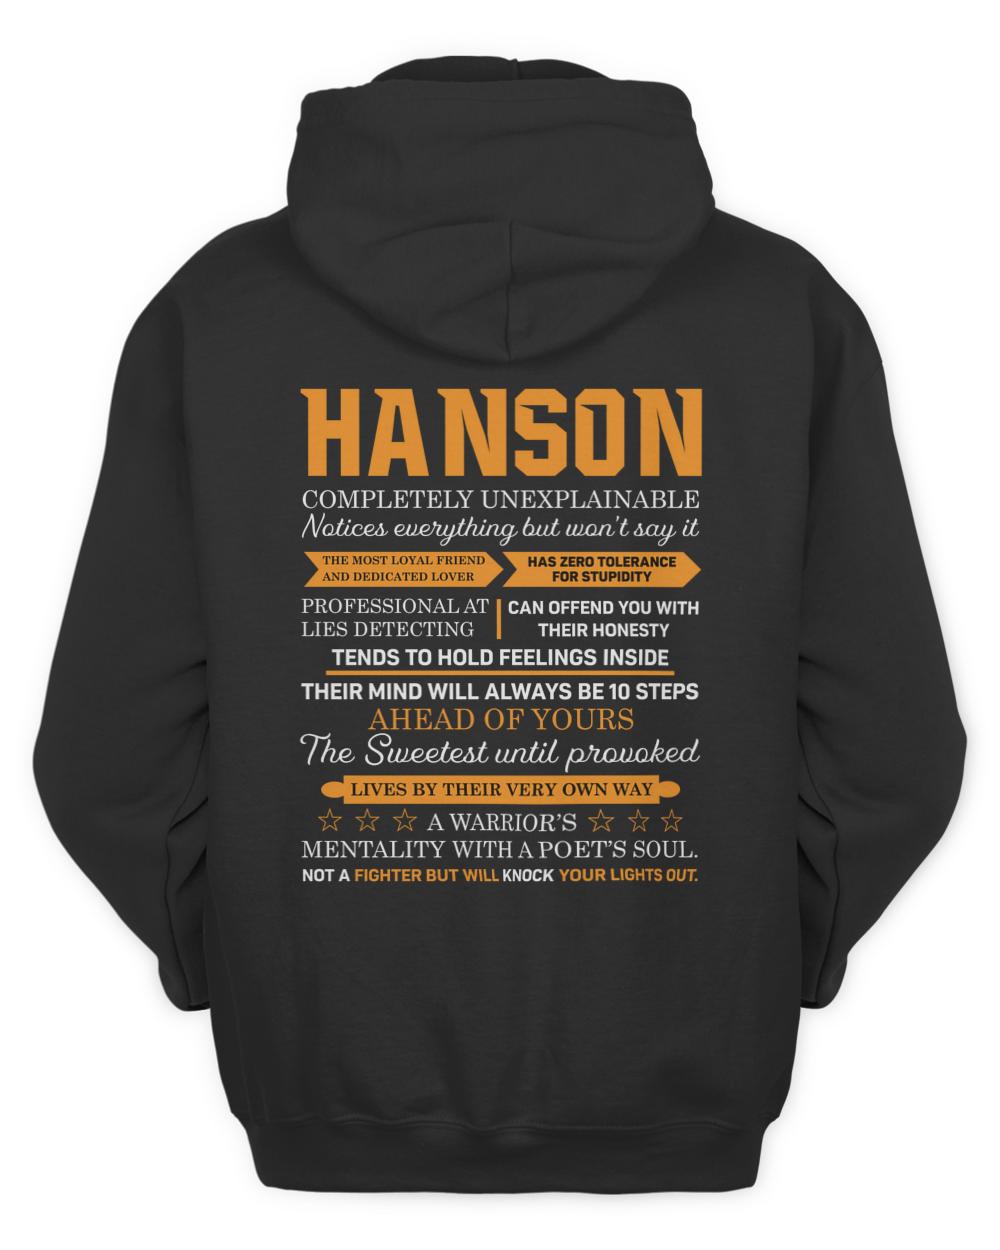 HANSON-13K-N1-01